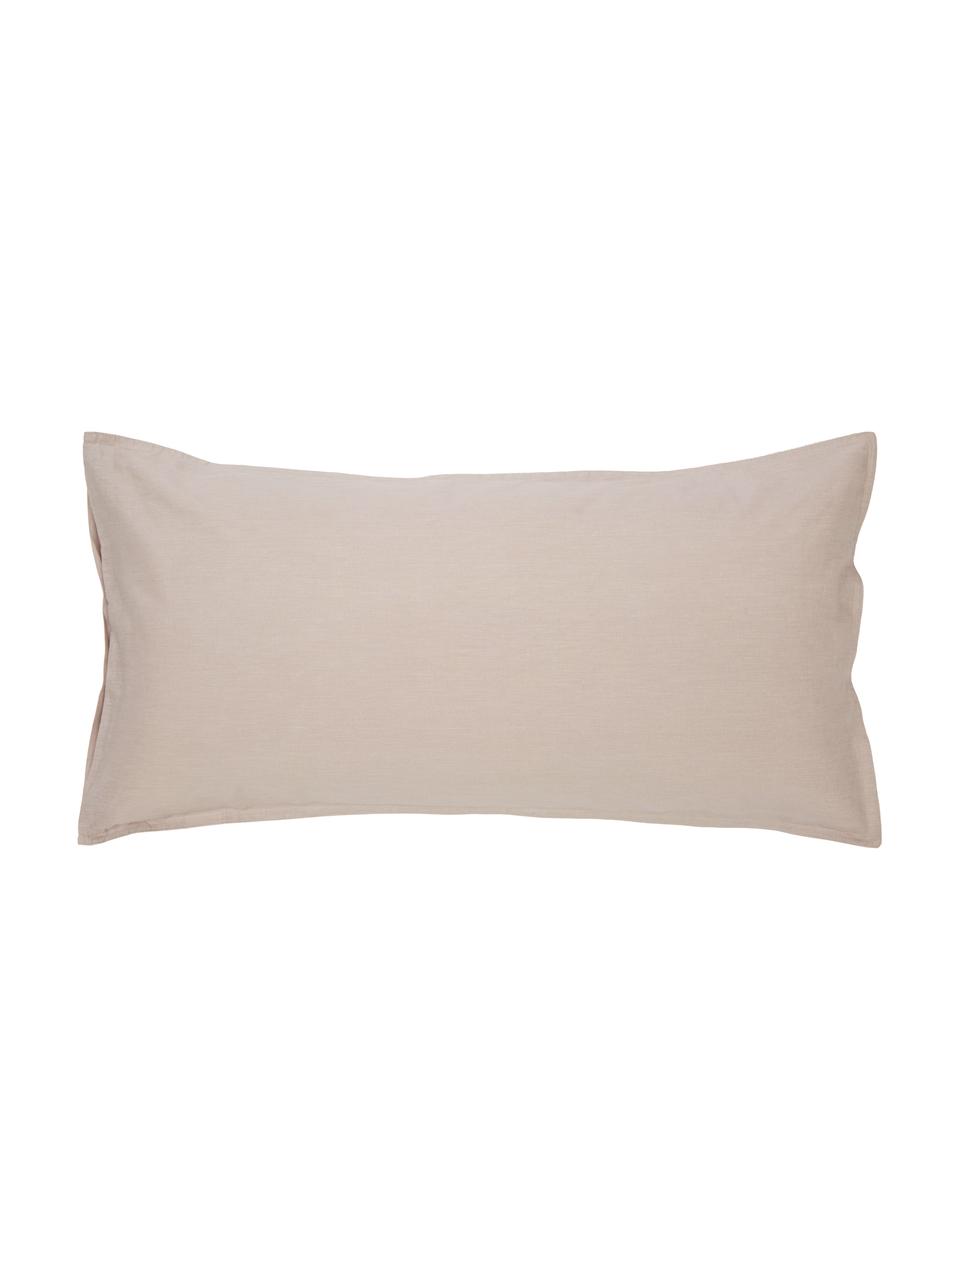 Poszewka na poduszkę z bawełny z efektem sprania Arlene, 2 szt., Beżowy, S 40 x D 80 cm